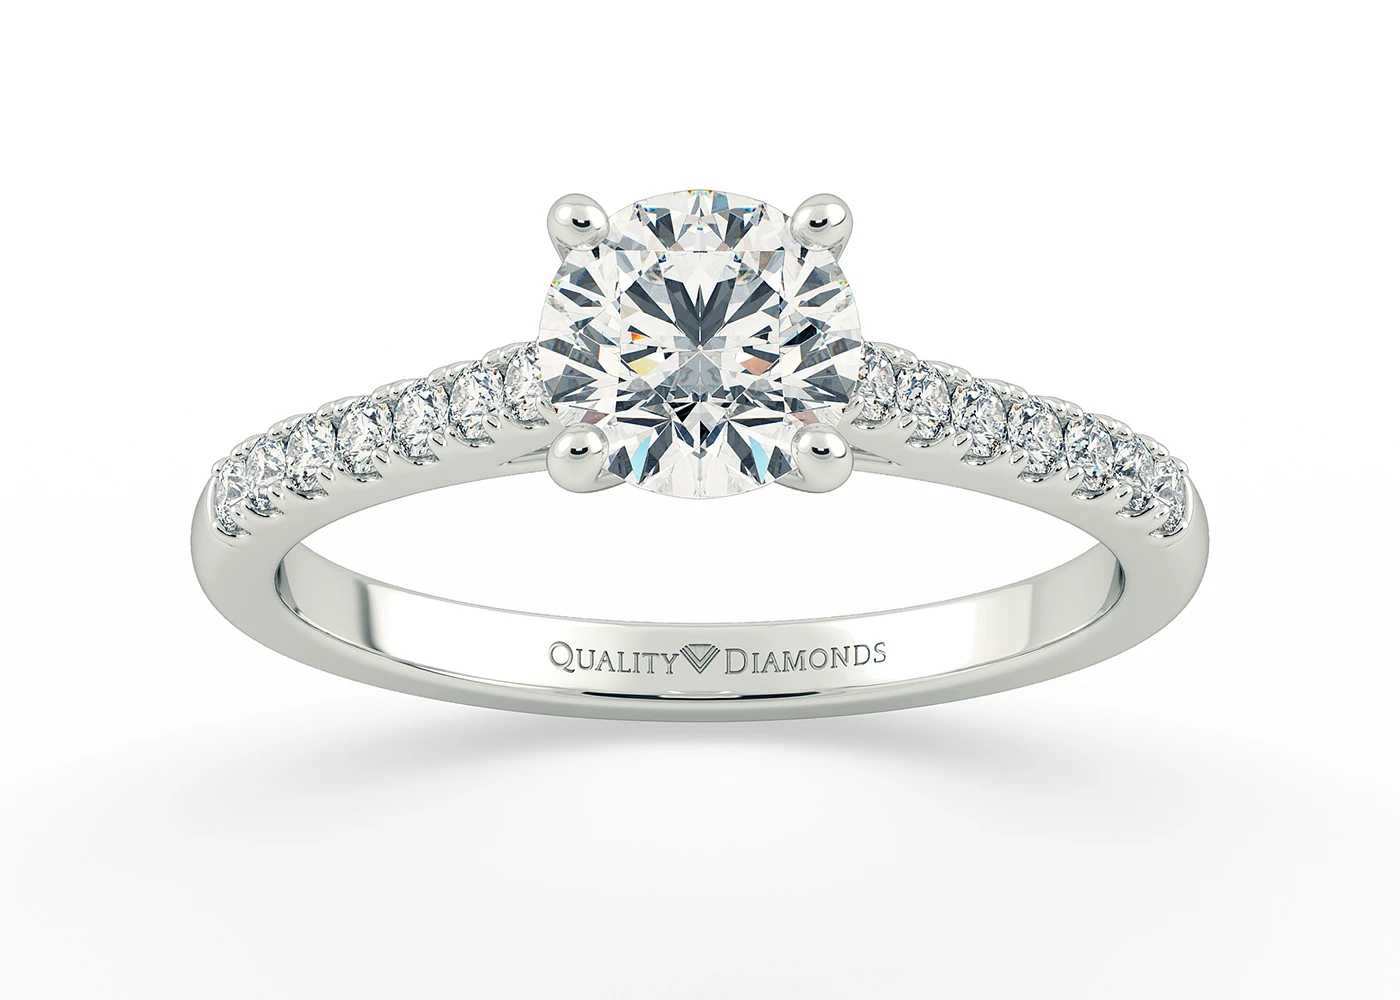 One Carat Round Brilliant Diamond Set Diamond Engagement Ring in Platinum 950